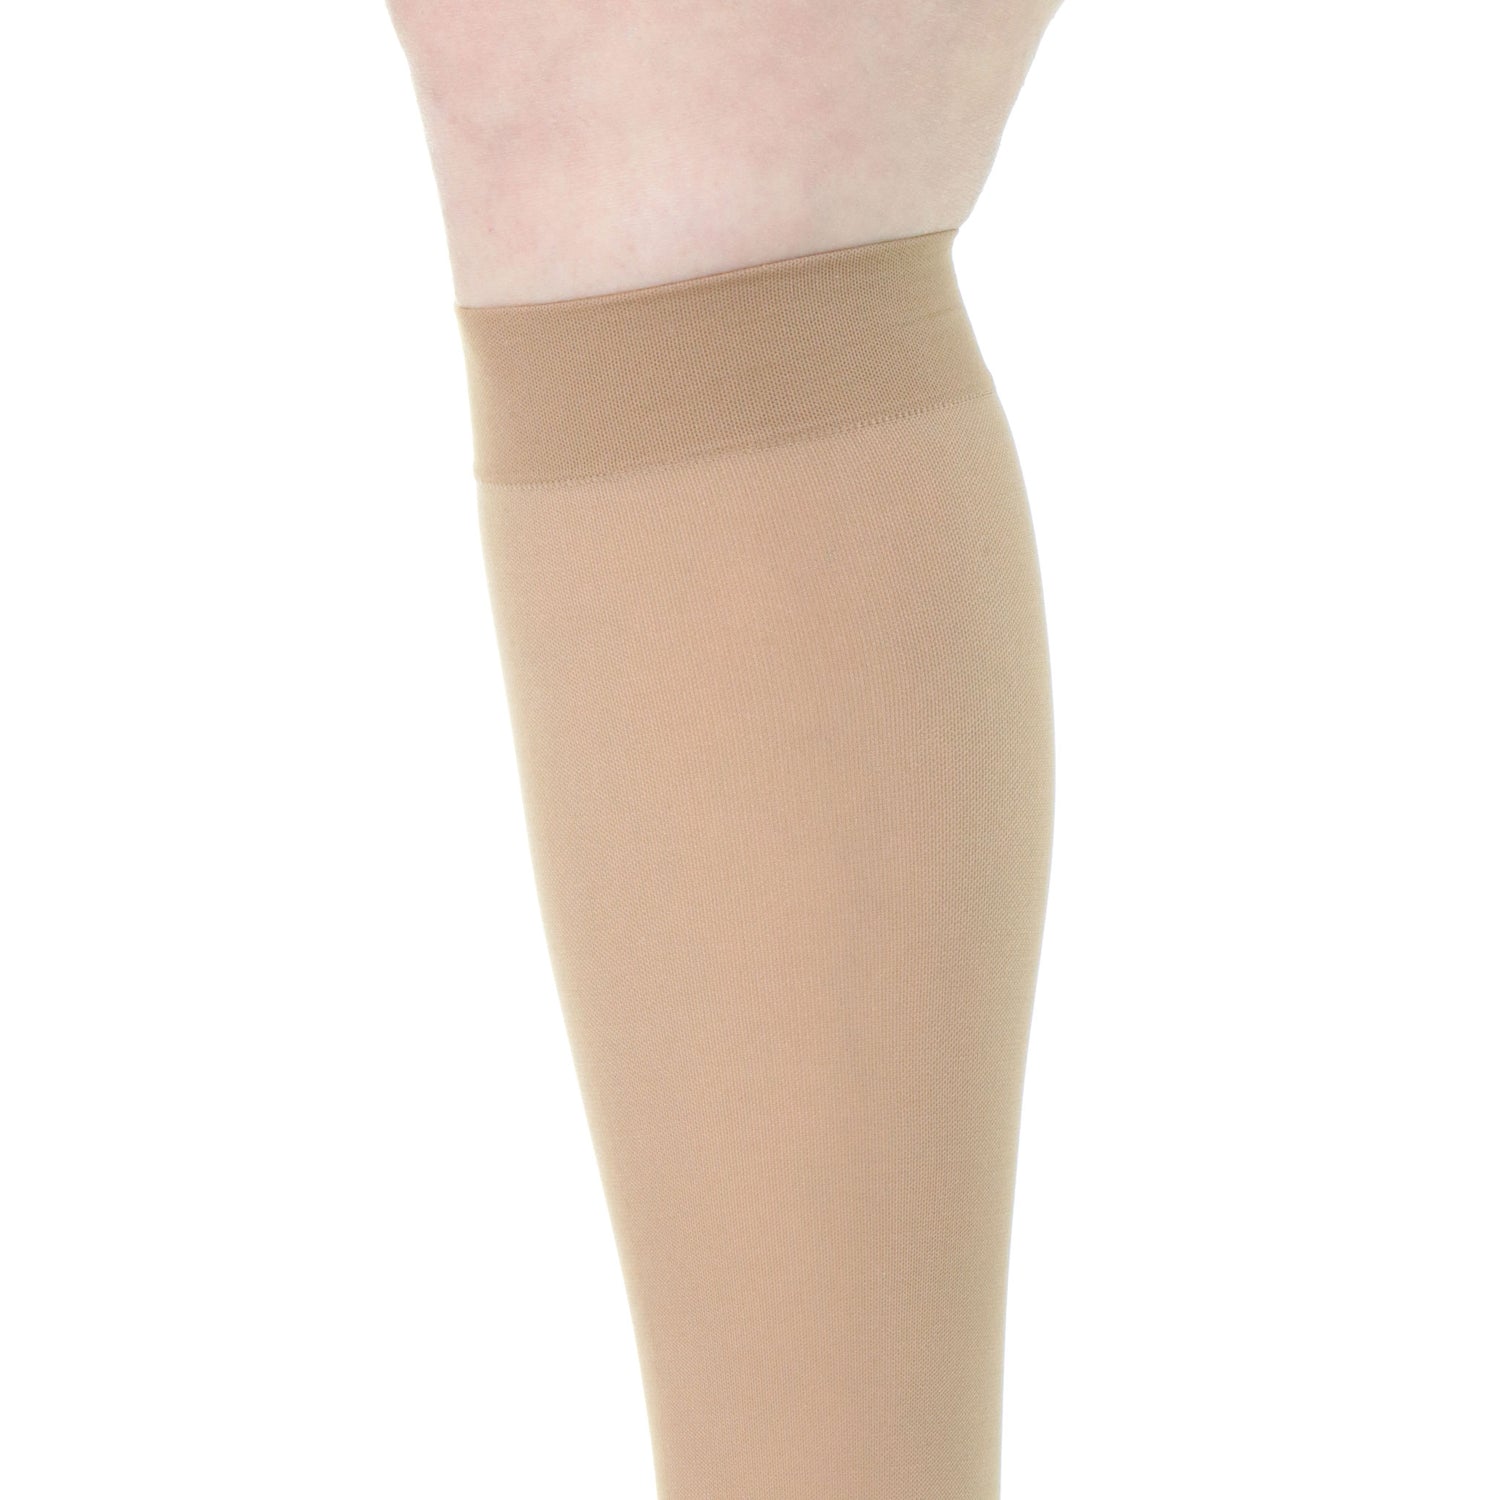 Toeless Compression Socks - For Women – 20 30 mmHg